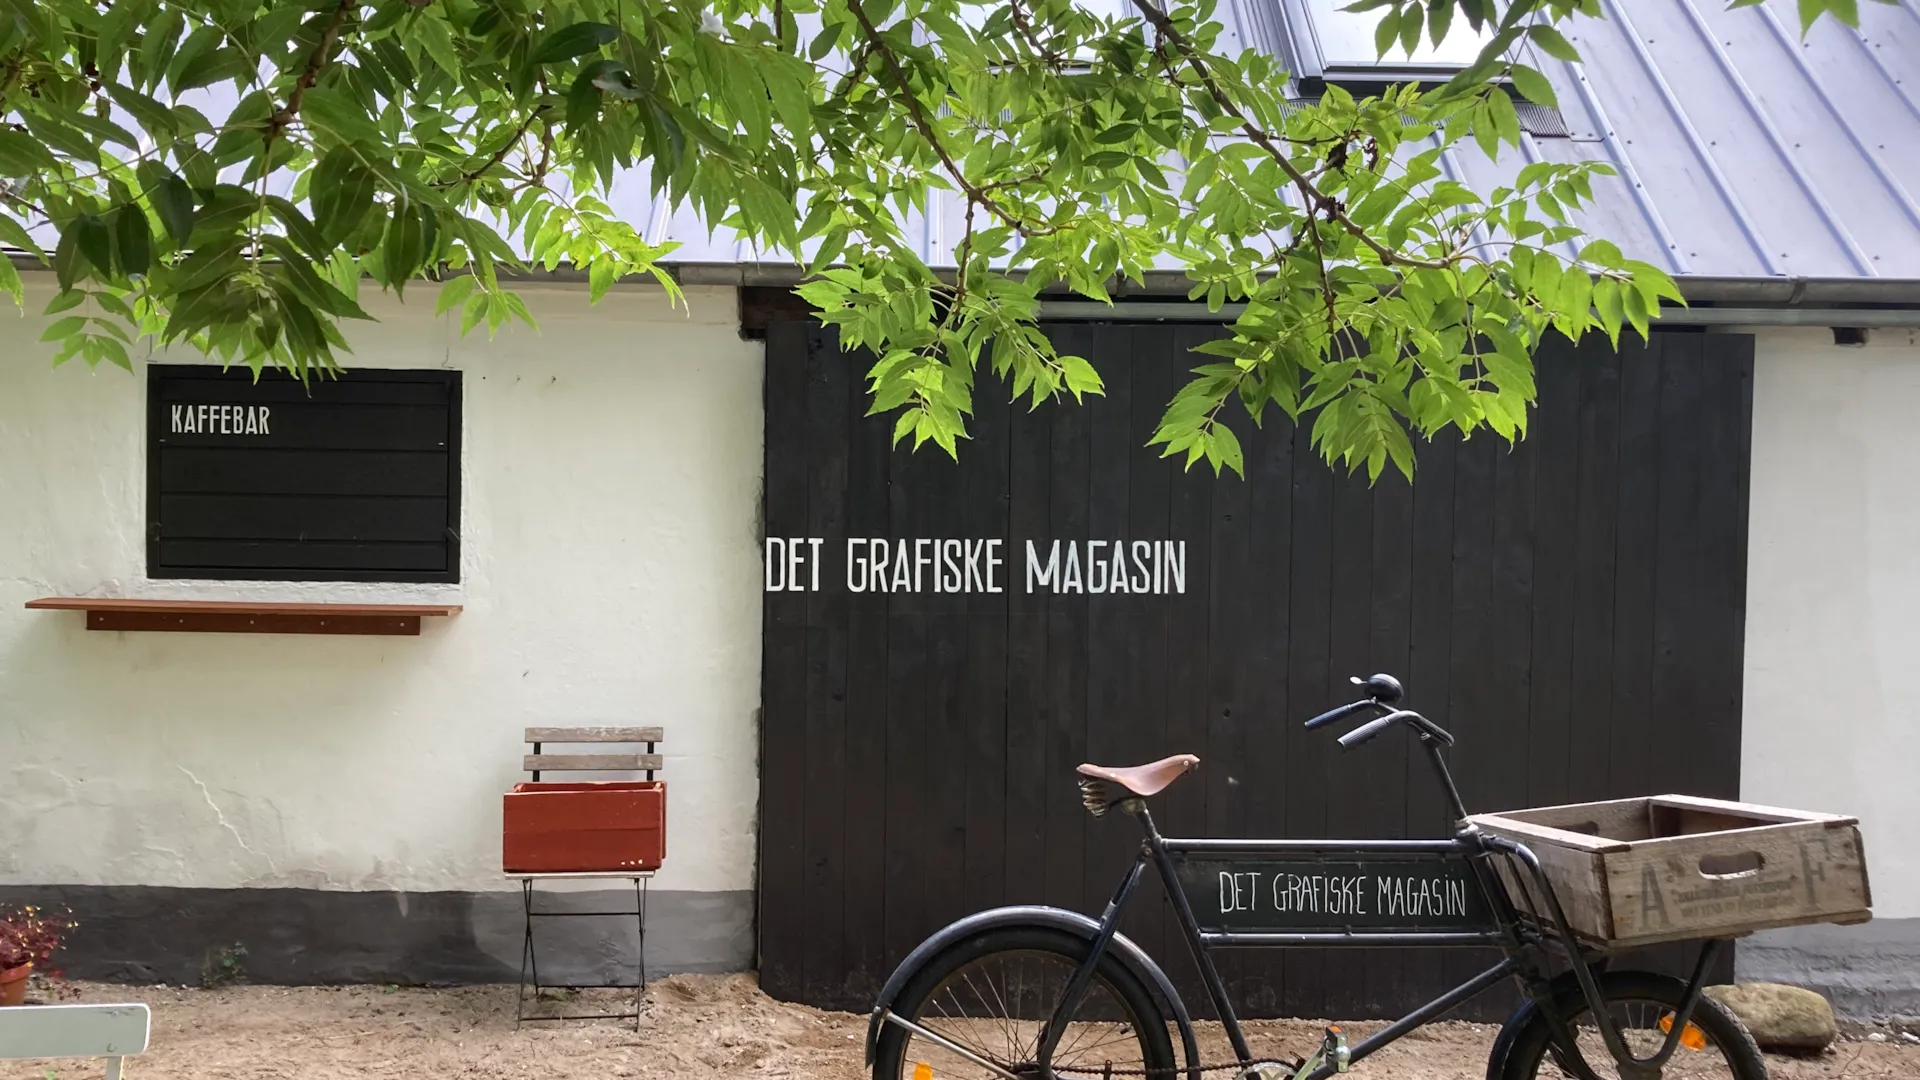 Indgangen til kaffebar og kreativ workshop Det Grafiske Magasin på øen Hjarnø i Horsens Fjord